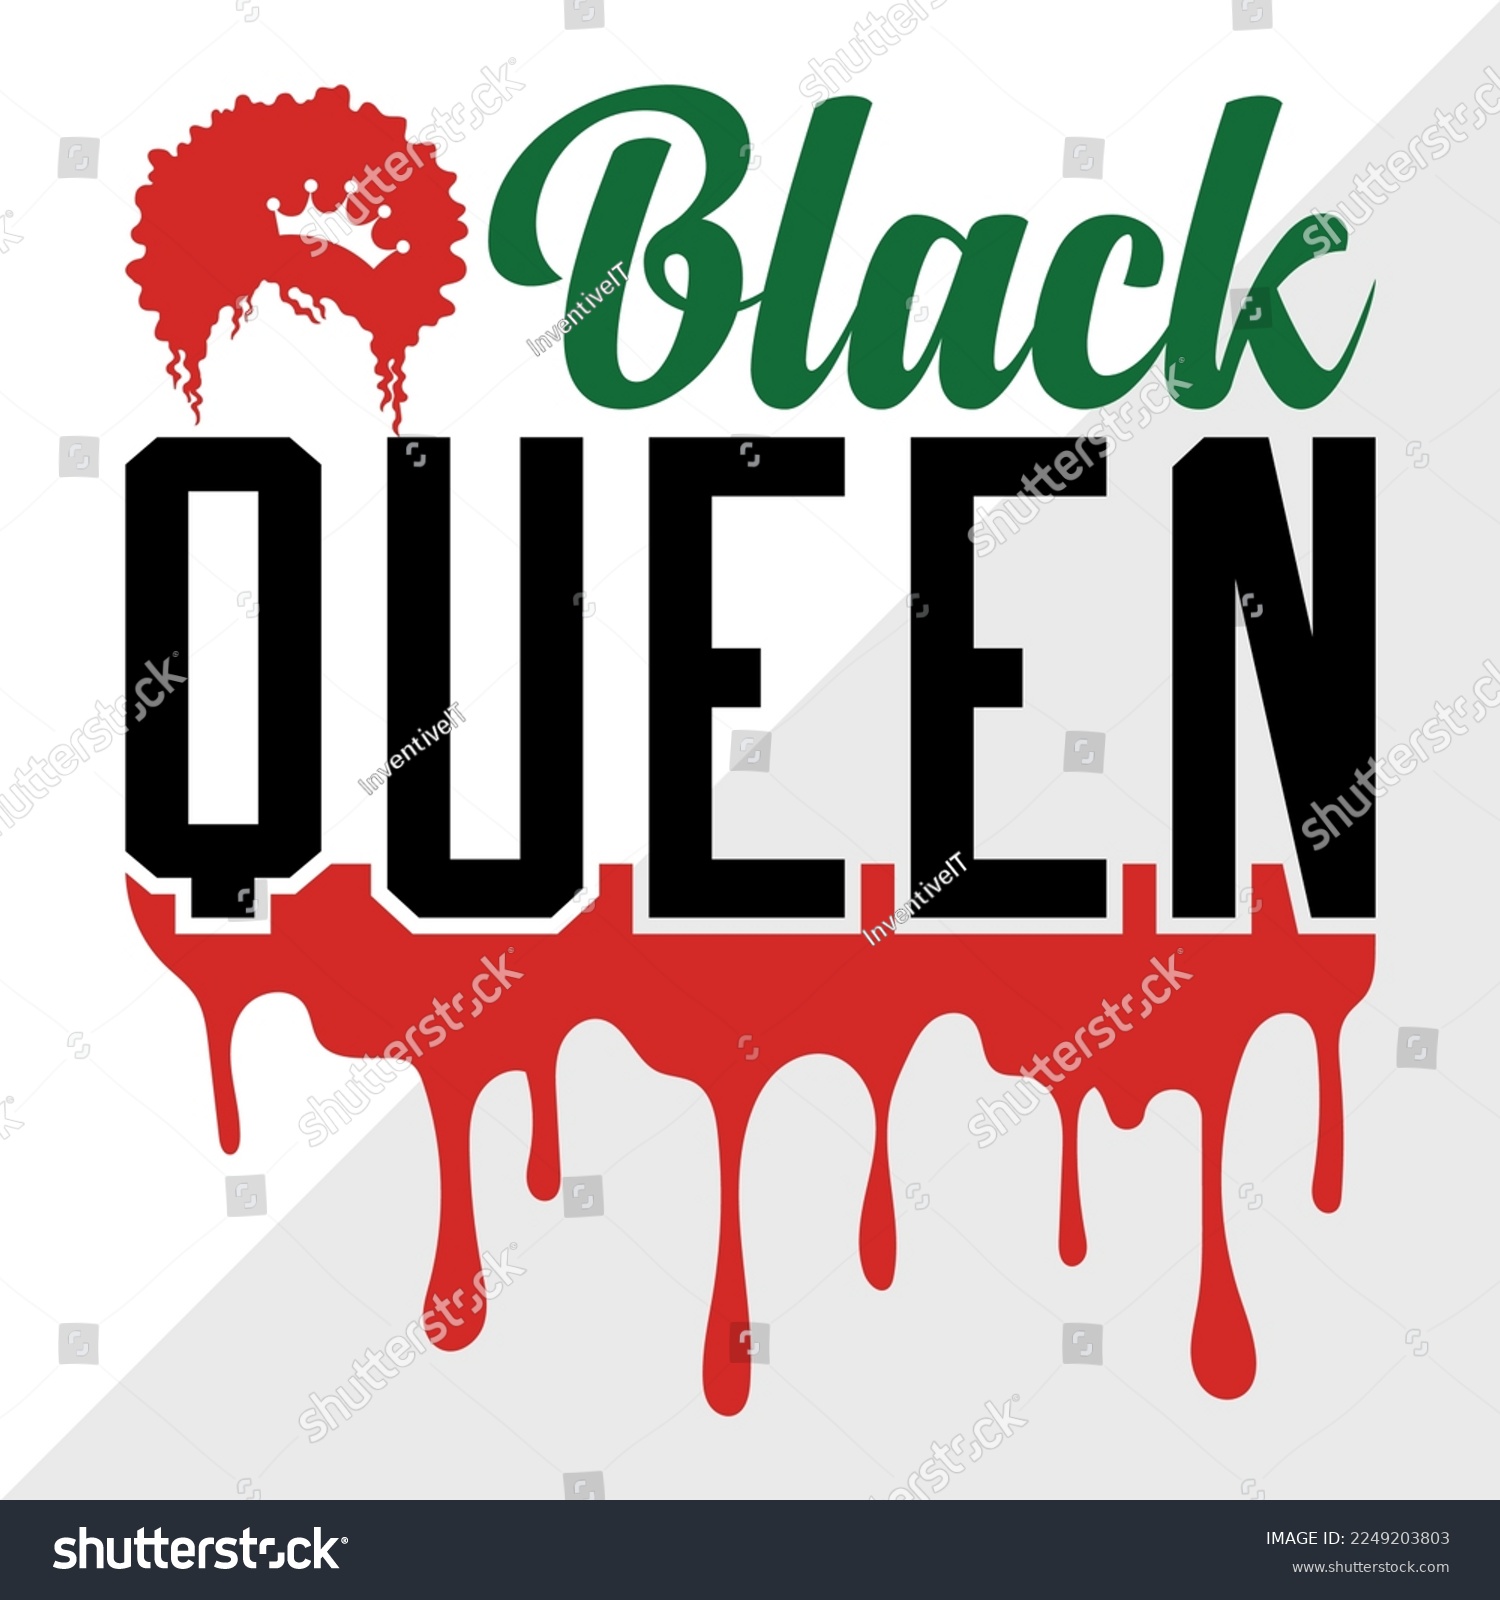 SVG of Black Queen SVG Printable Vector Illustration svg